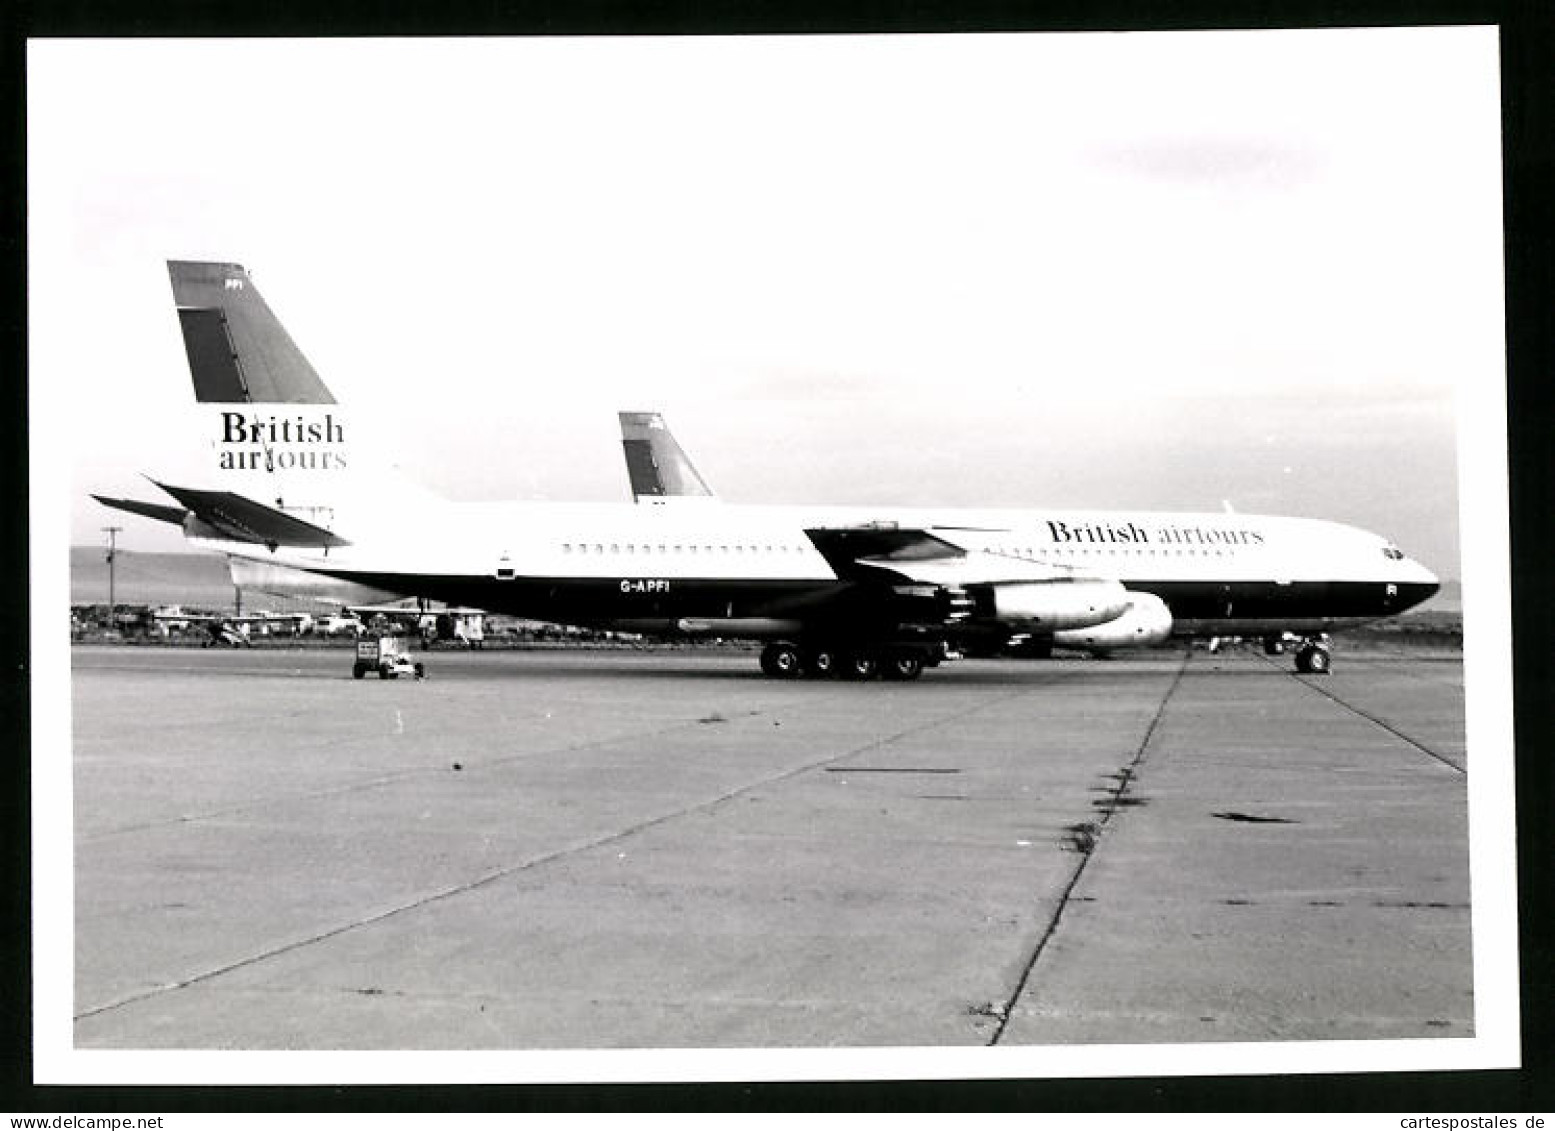 Fotografie Flugzeug Boeing 707, Passagierflugzeug British Airtours, Kennung G-APFI  - Aviation